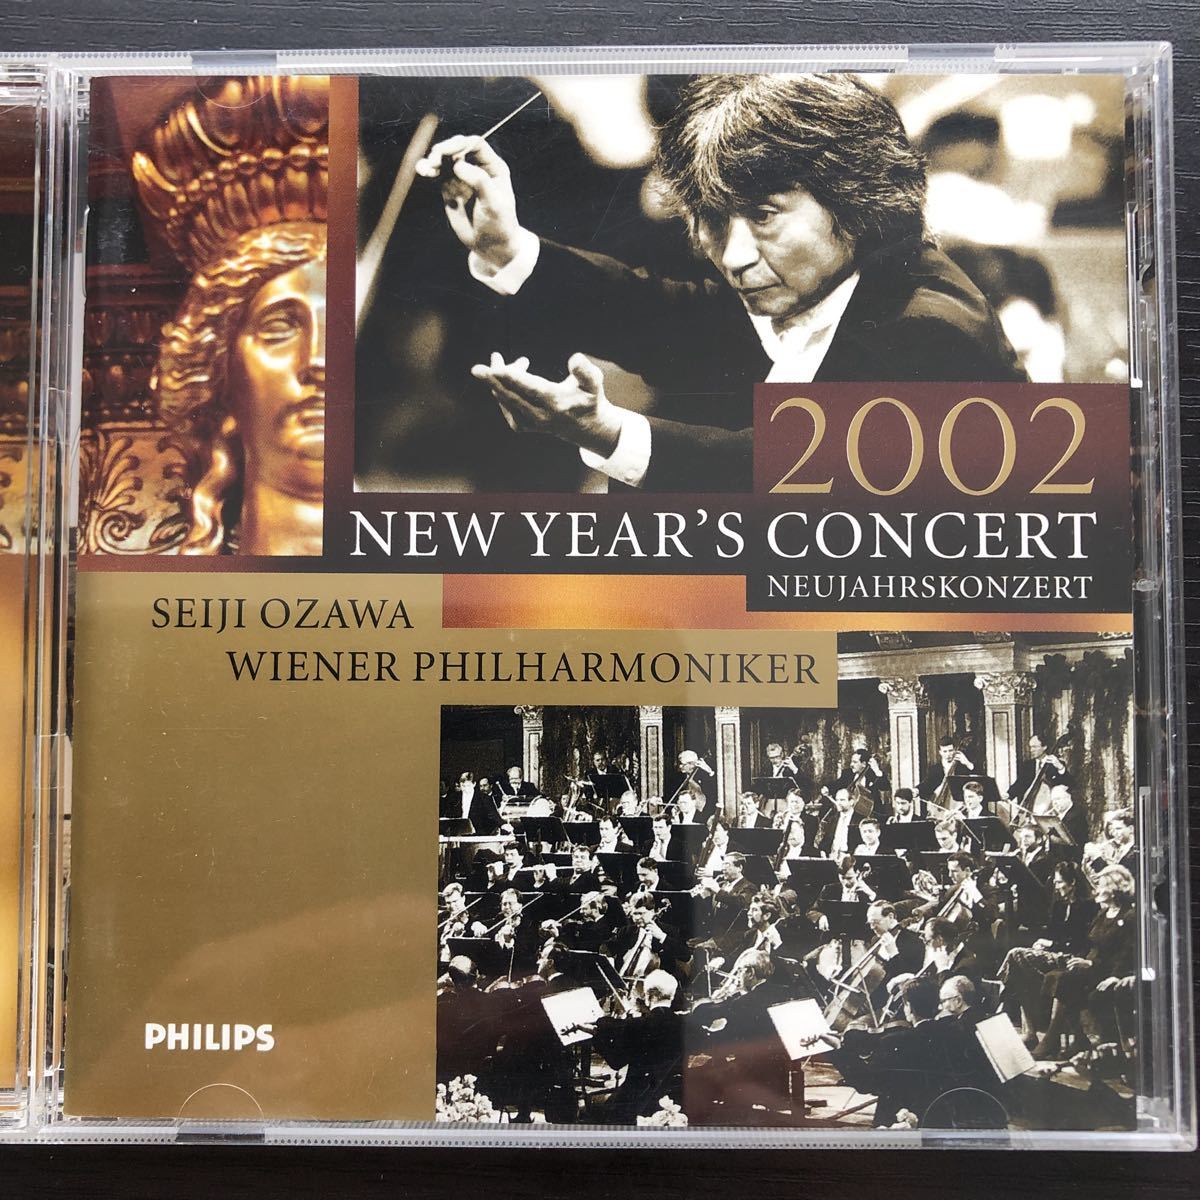 小澤征爾 New Year's Concert 2002 クラシック | www.vinoflix.com